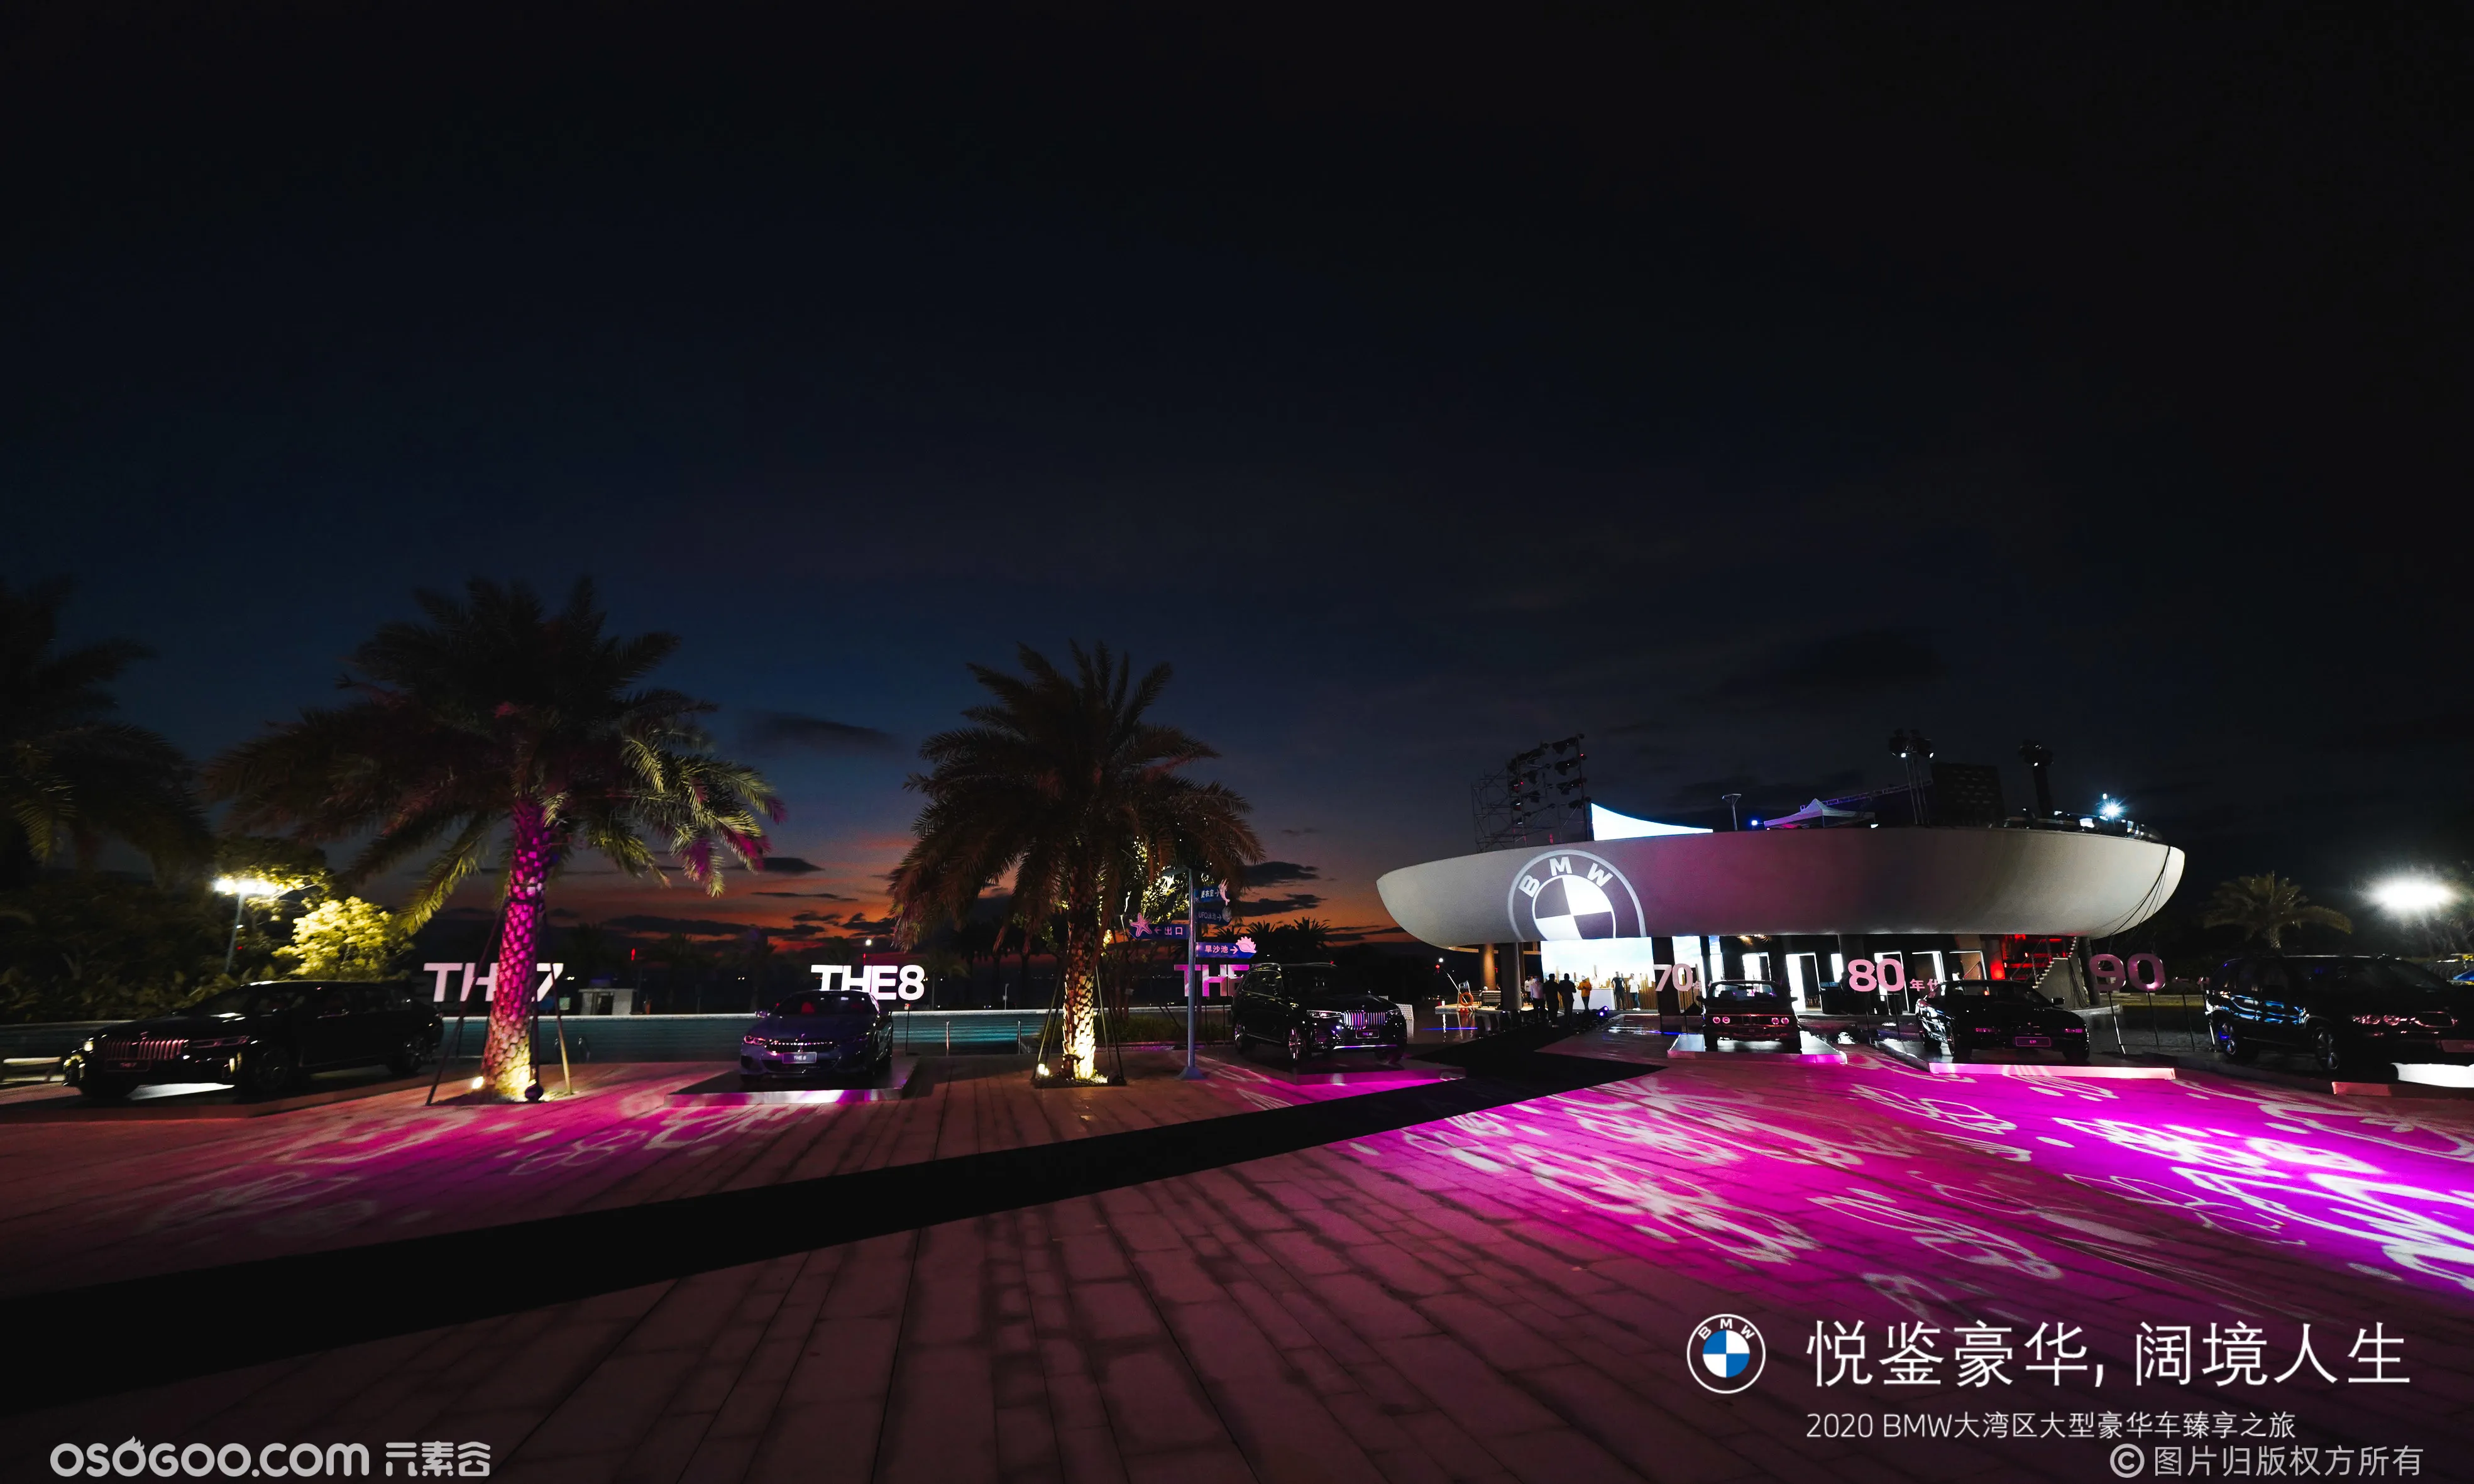 2020BMW惠州UFO无边泳池晚宴